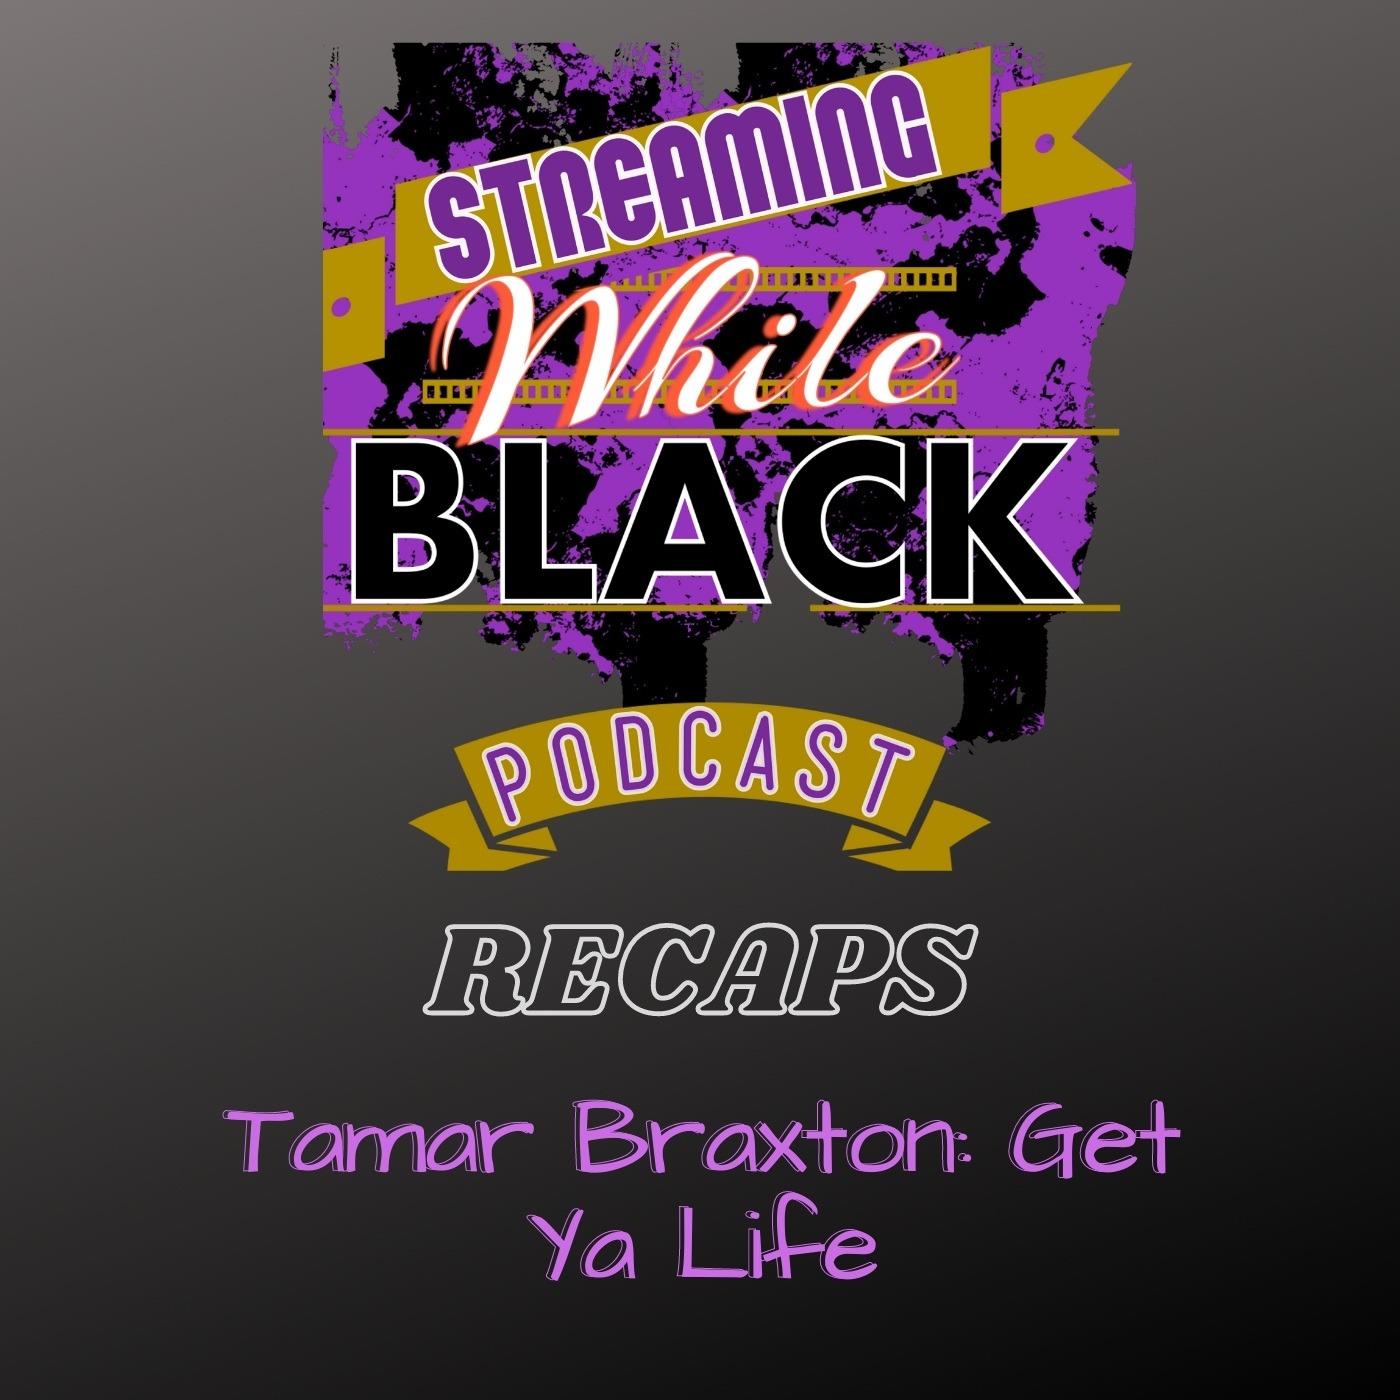 Tamar Braxton: Get Ya Life